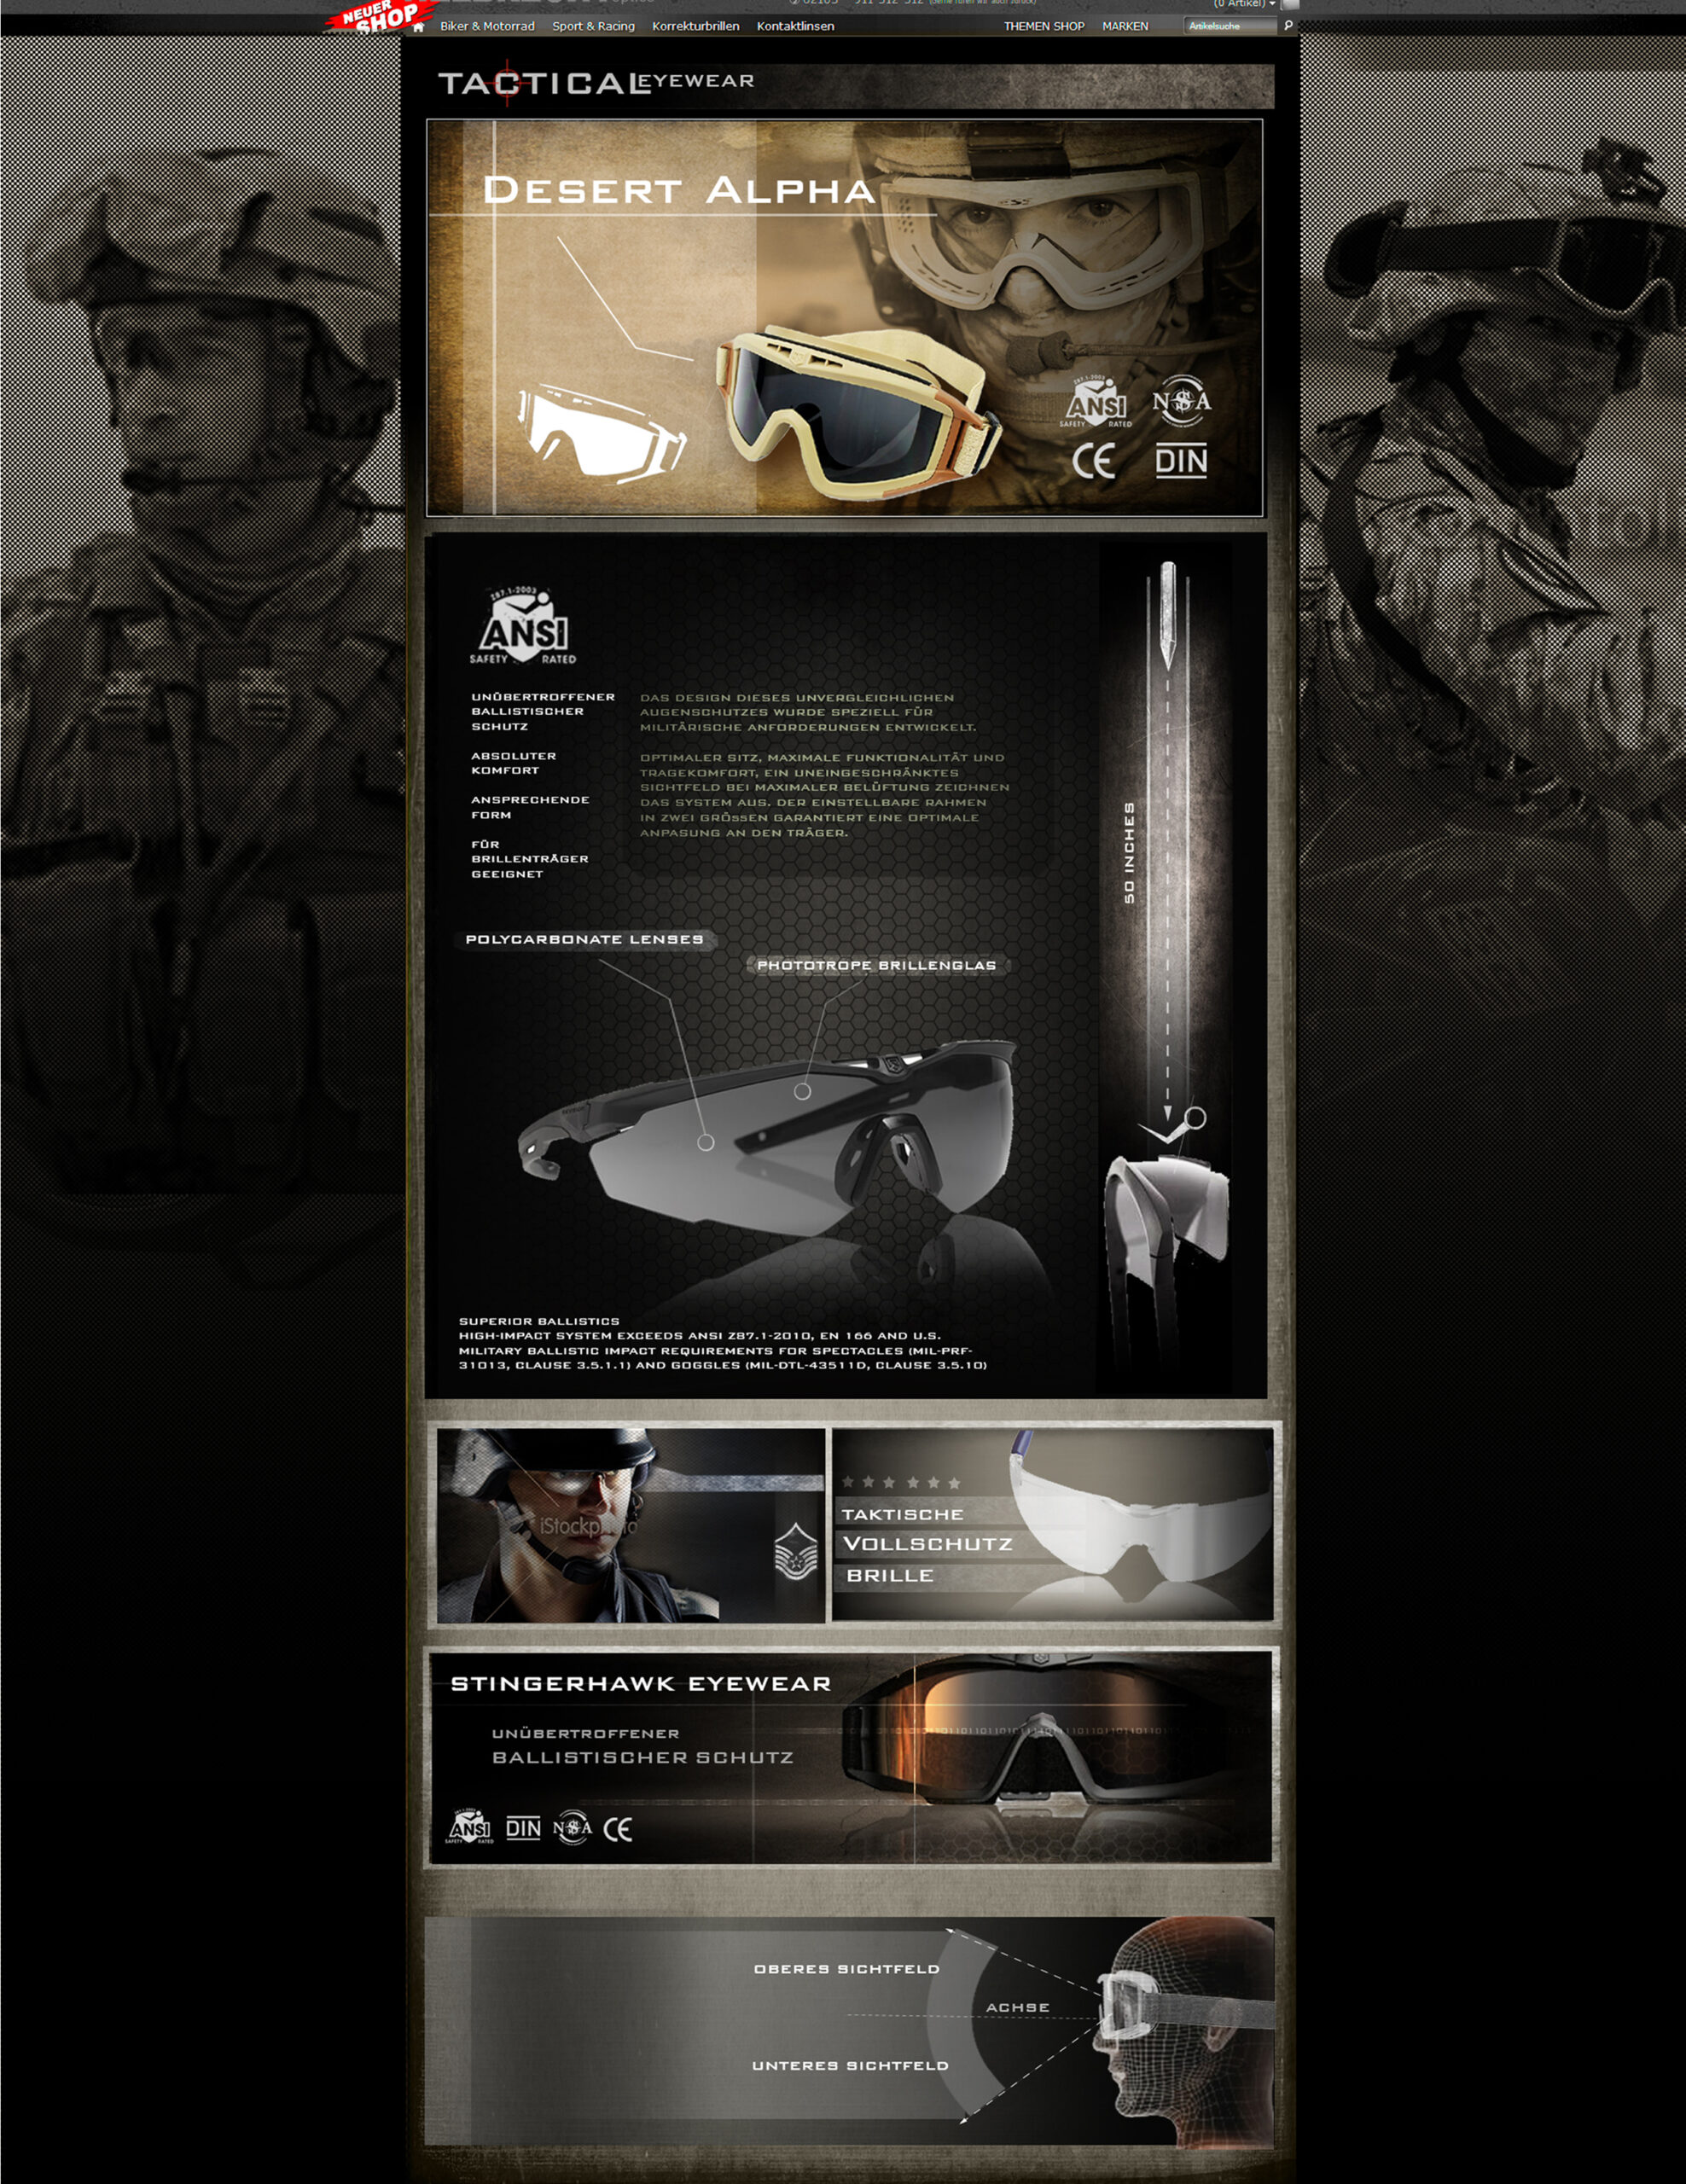 Entwurf für  die Website von Tactical Eyewear Schutzbrillen
Produkt: Tactical-Brillen 2013/2014